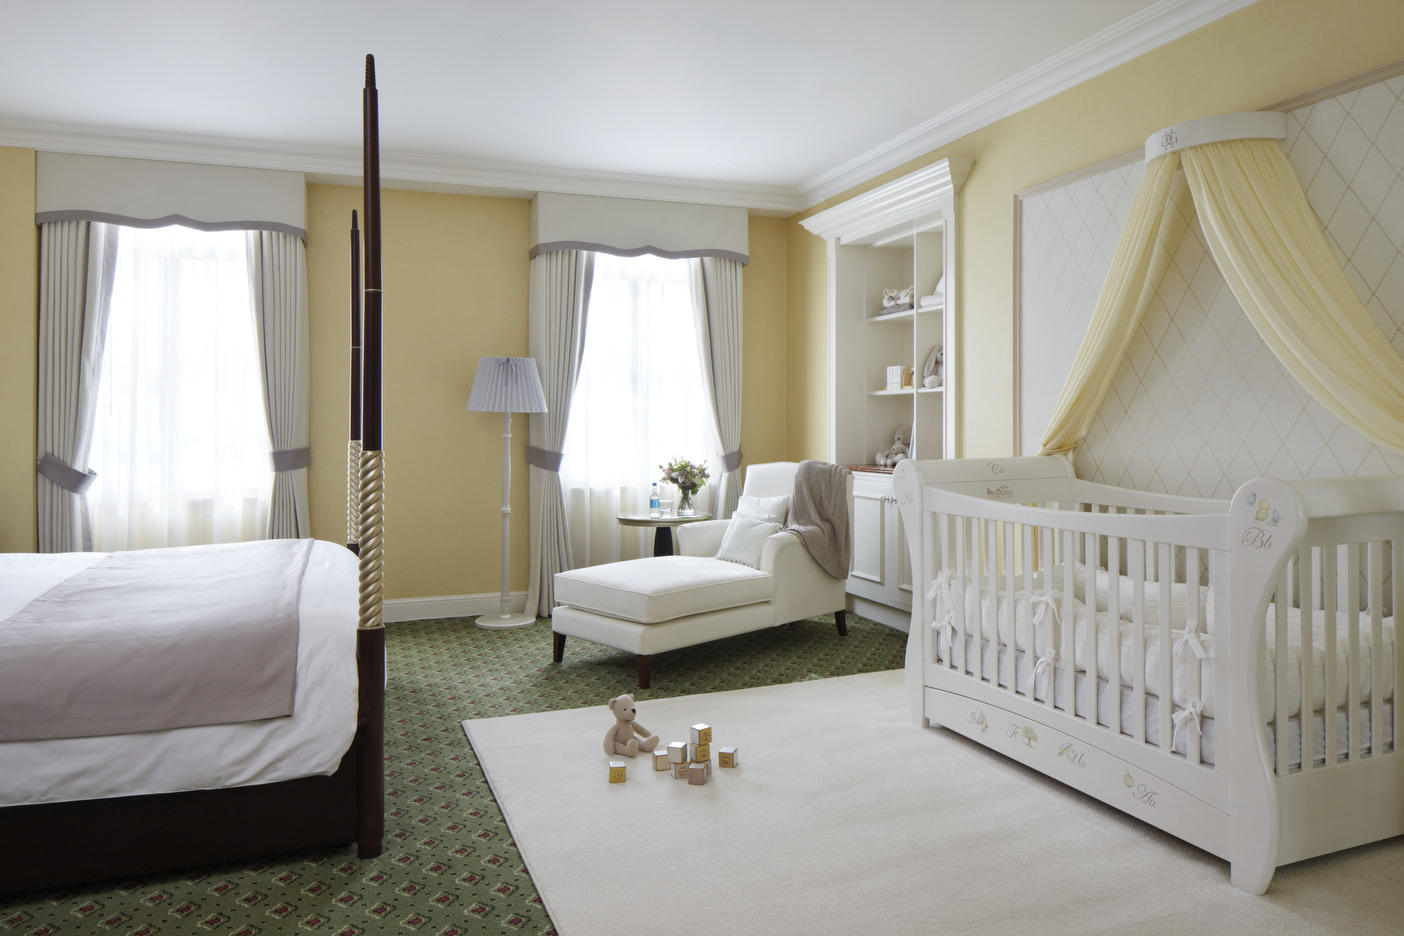 Baby bedroom. Комната для новорожденного. Спальня совмещенная с детской кроваткой. Спальня с детской кроваткой в родительской комнате. Детская кроватка в спальне родителей.